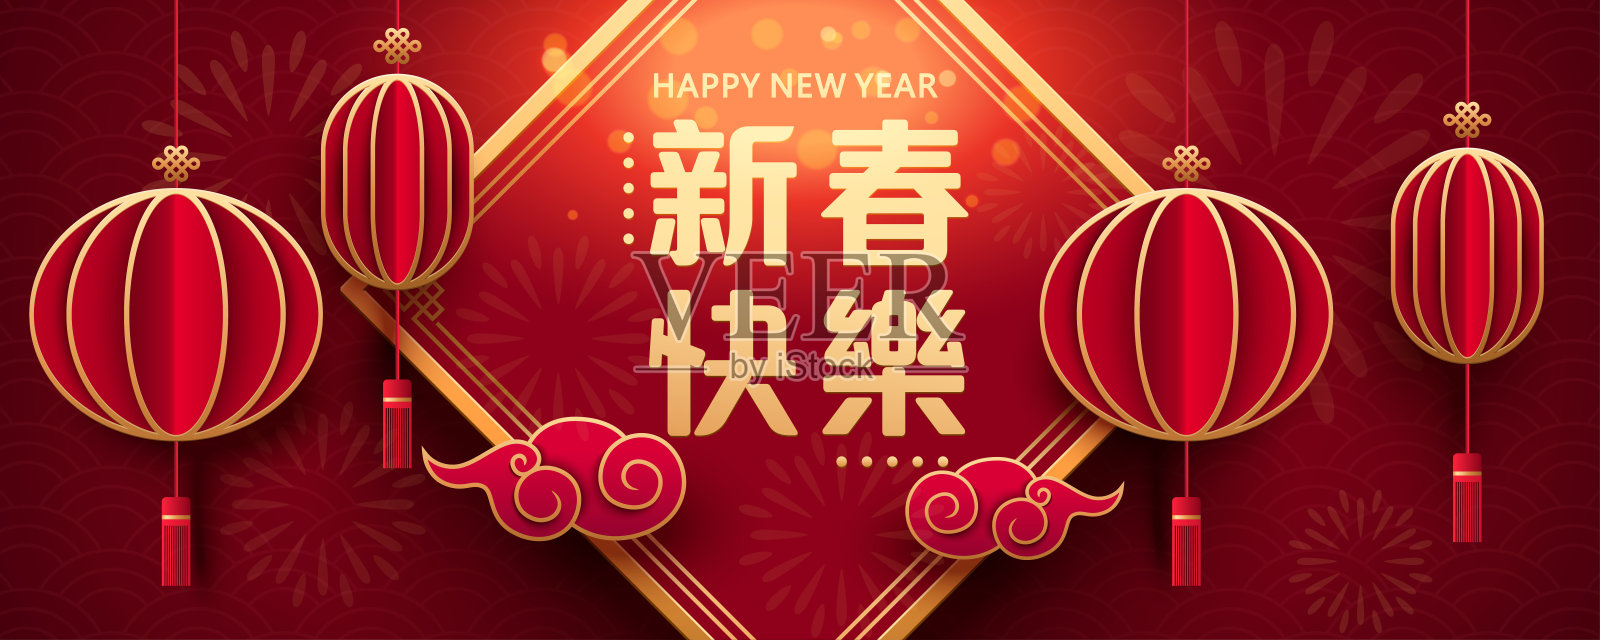 中国新年问候。农历新年的旗帜与灯笼在纸艺术风格设计模板素材